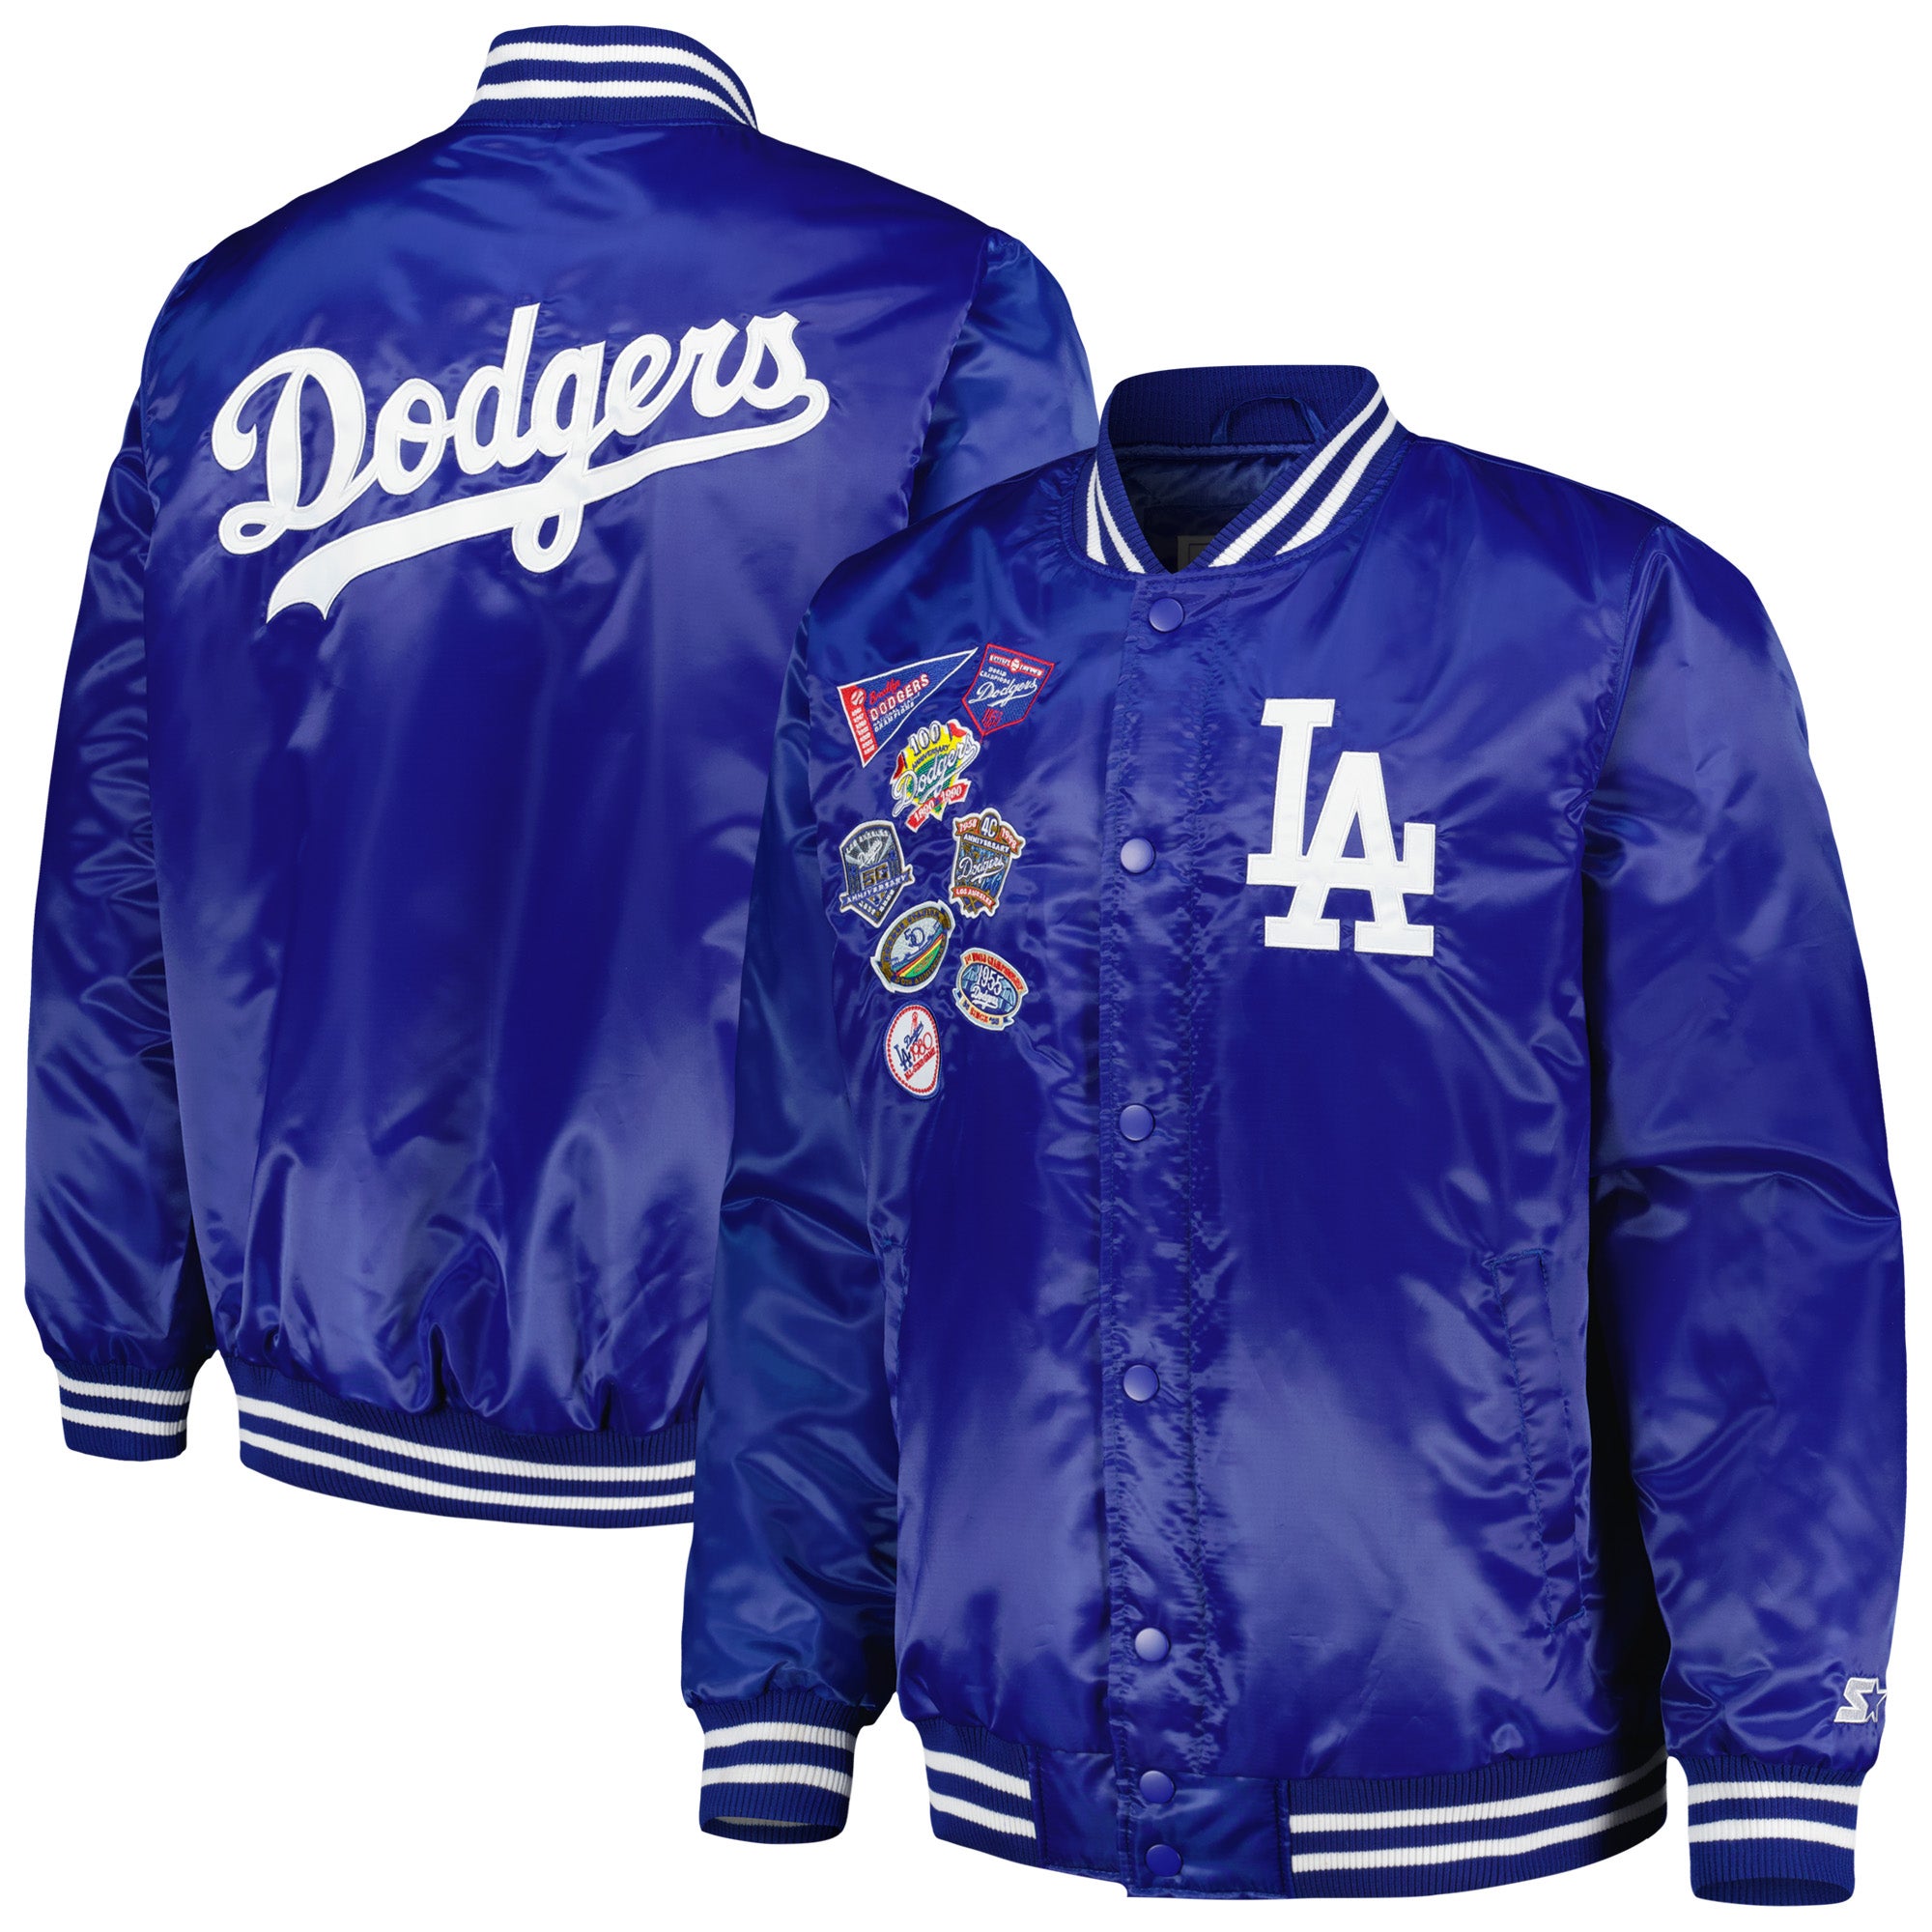 1980 Dodgers Los Angeles Starter Jacket